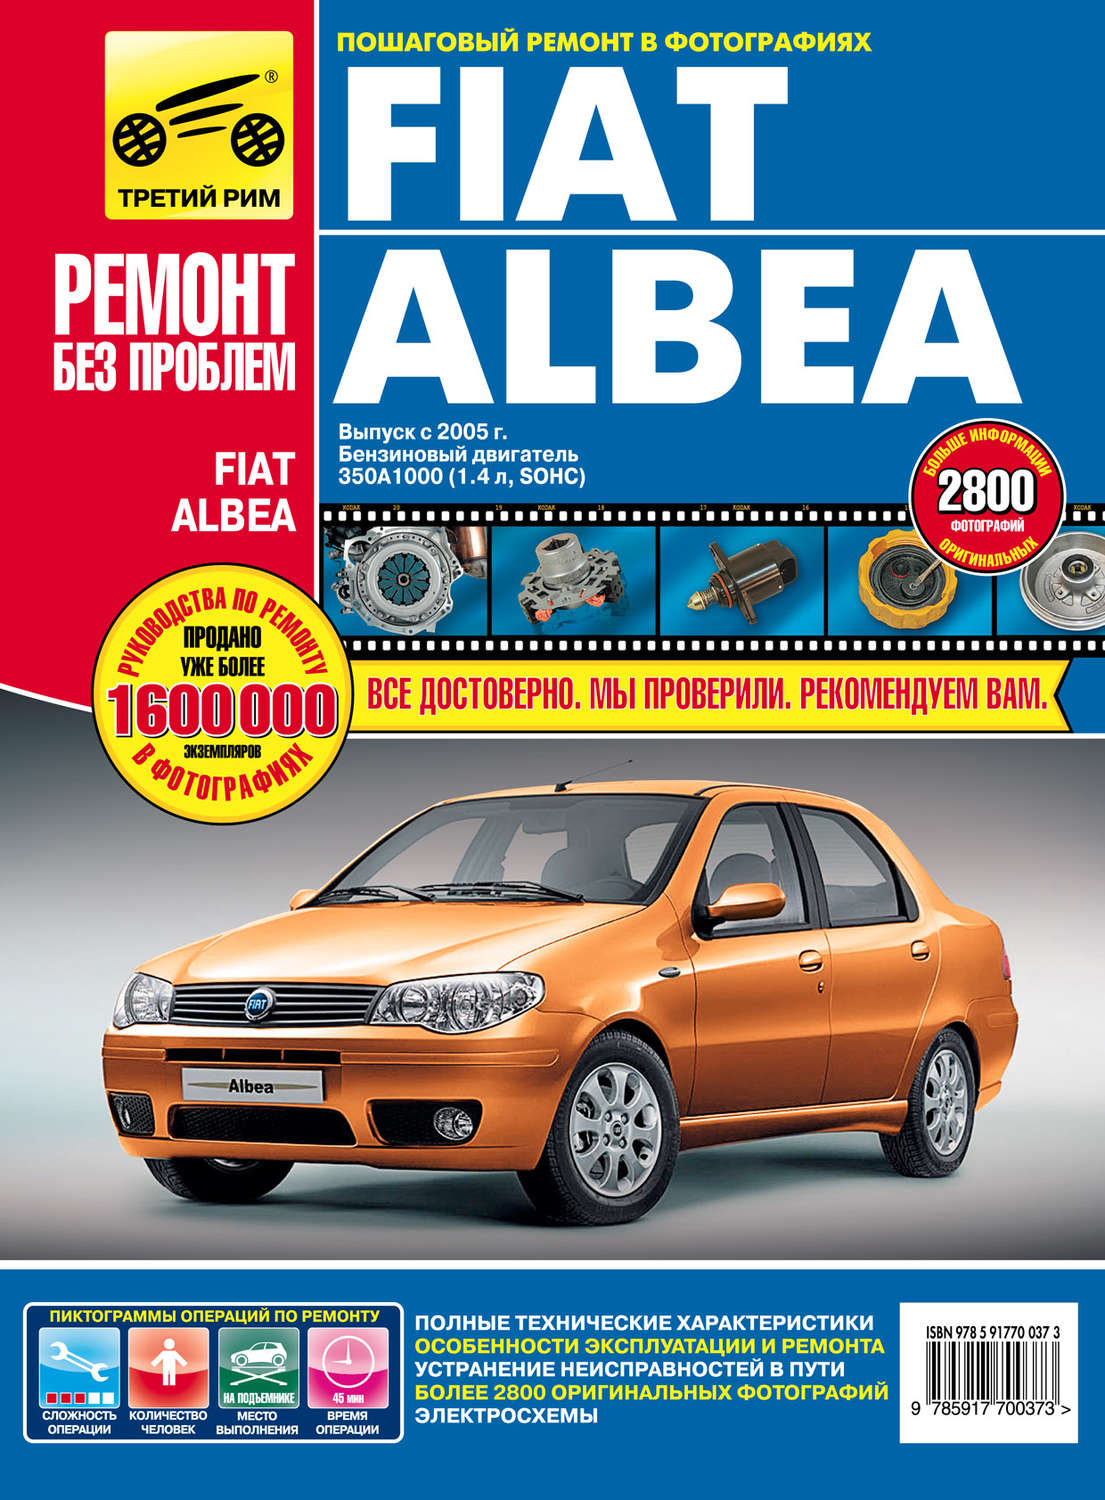 Цены на ремонт и обслуживание Fiat Albea